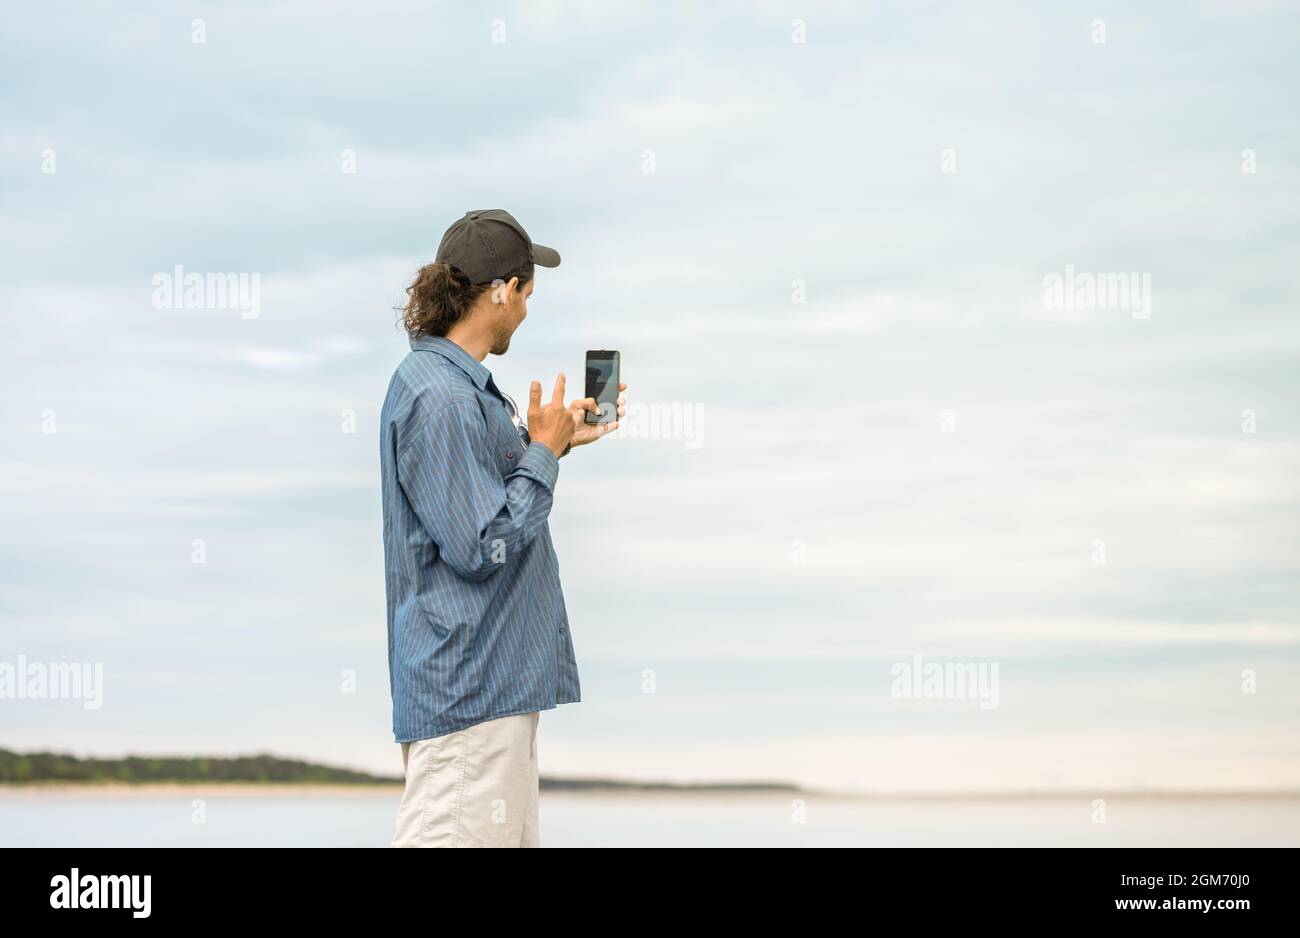 El hombre caucásico con está sosteniendo un smartphone en su mano y tomando una selfie en una playa. Foto de stock